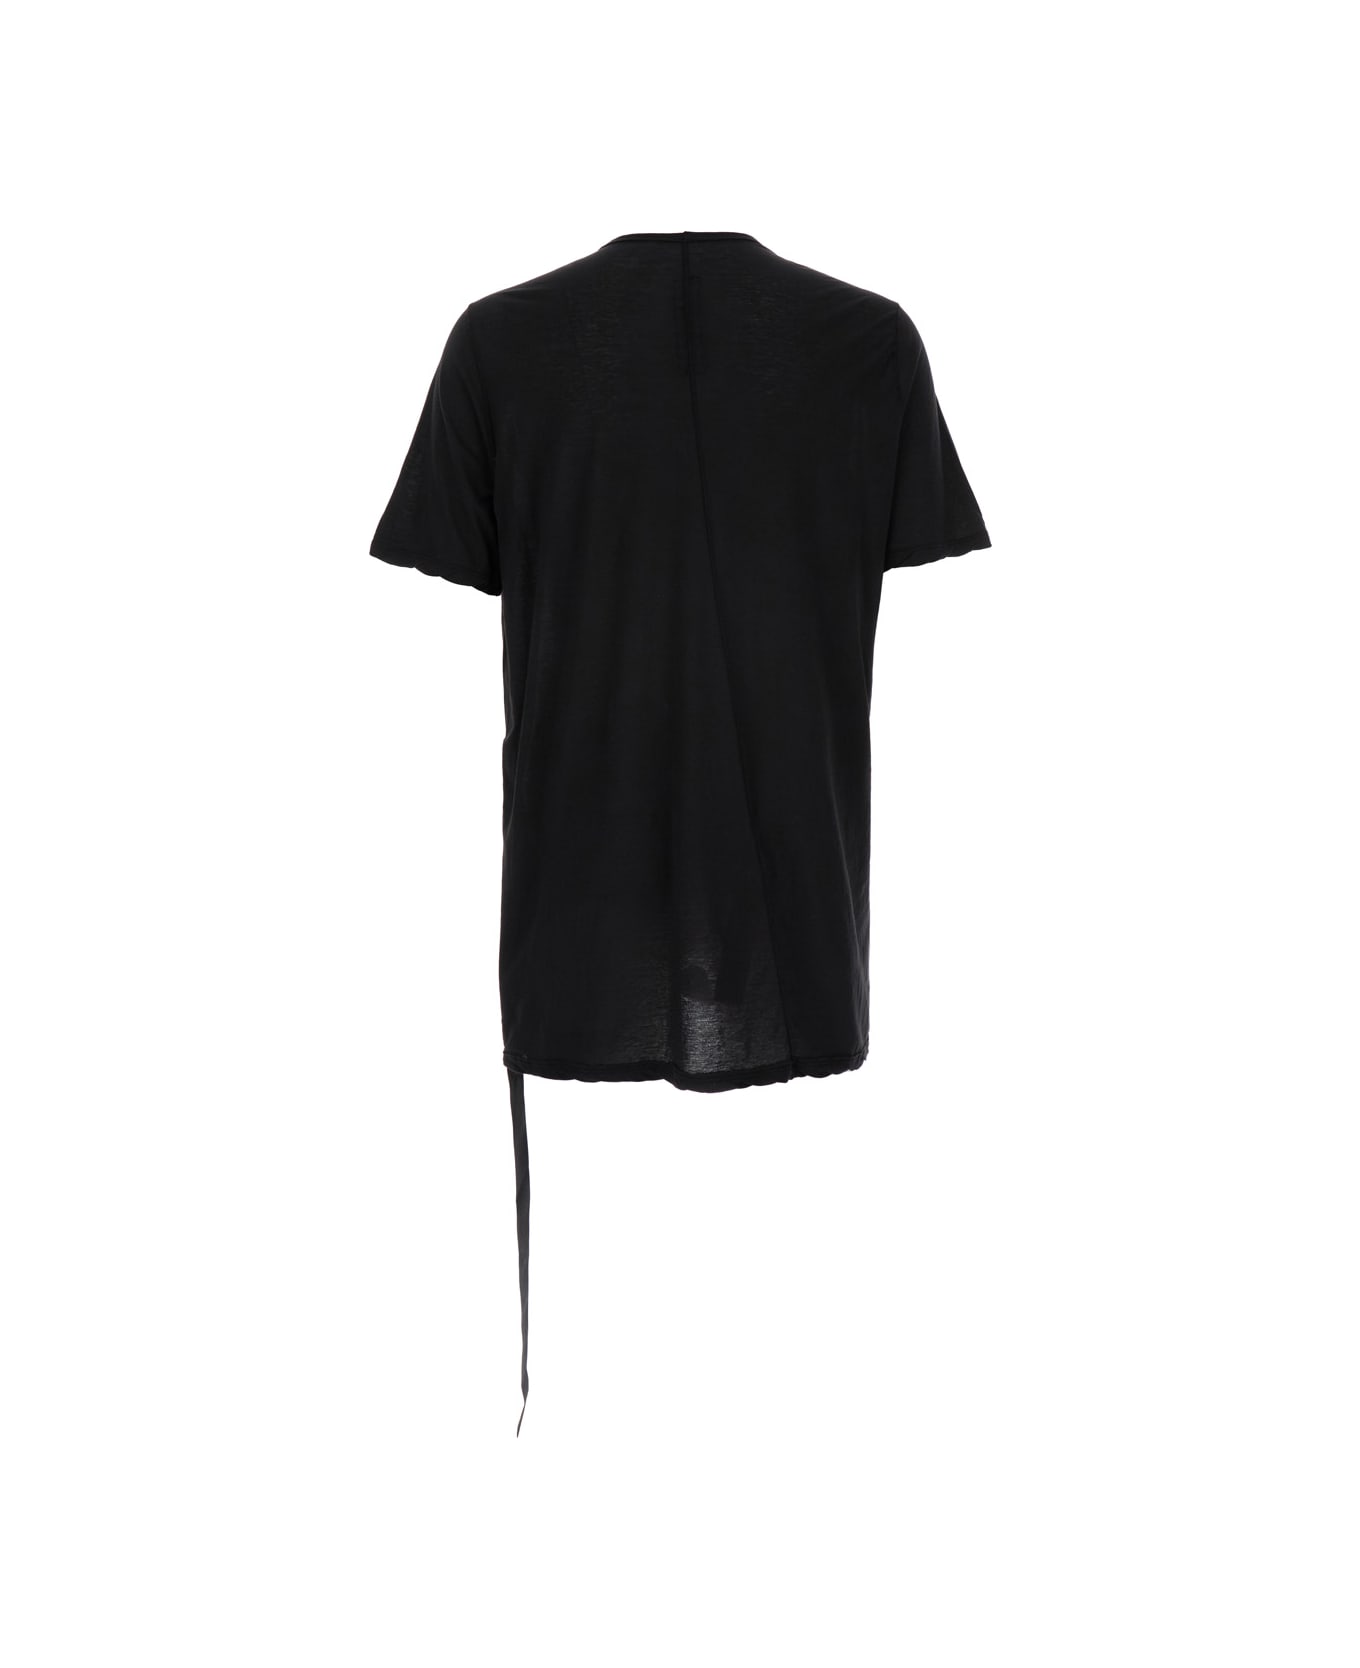 DRKSHDW T-shirt - Level T - Black